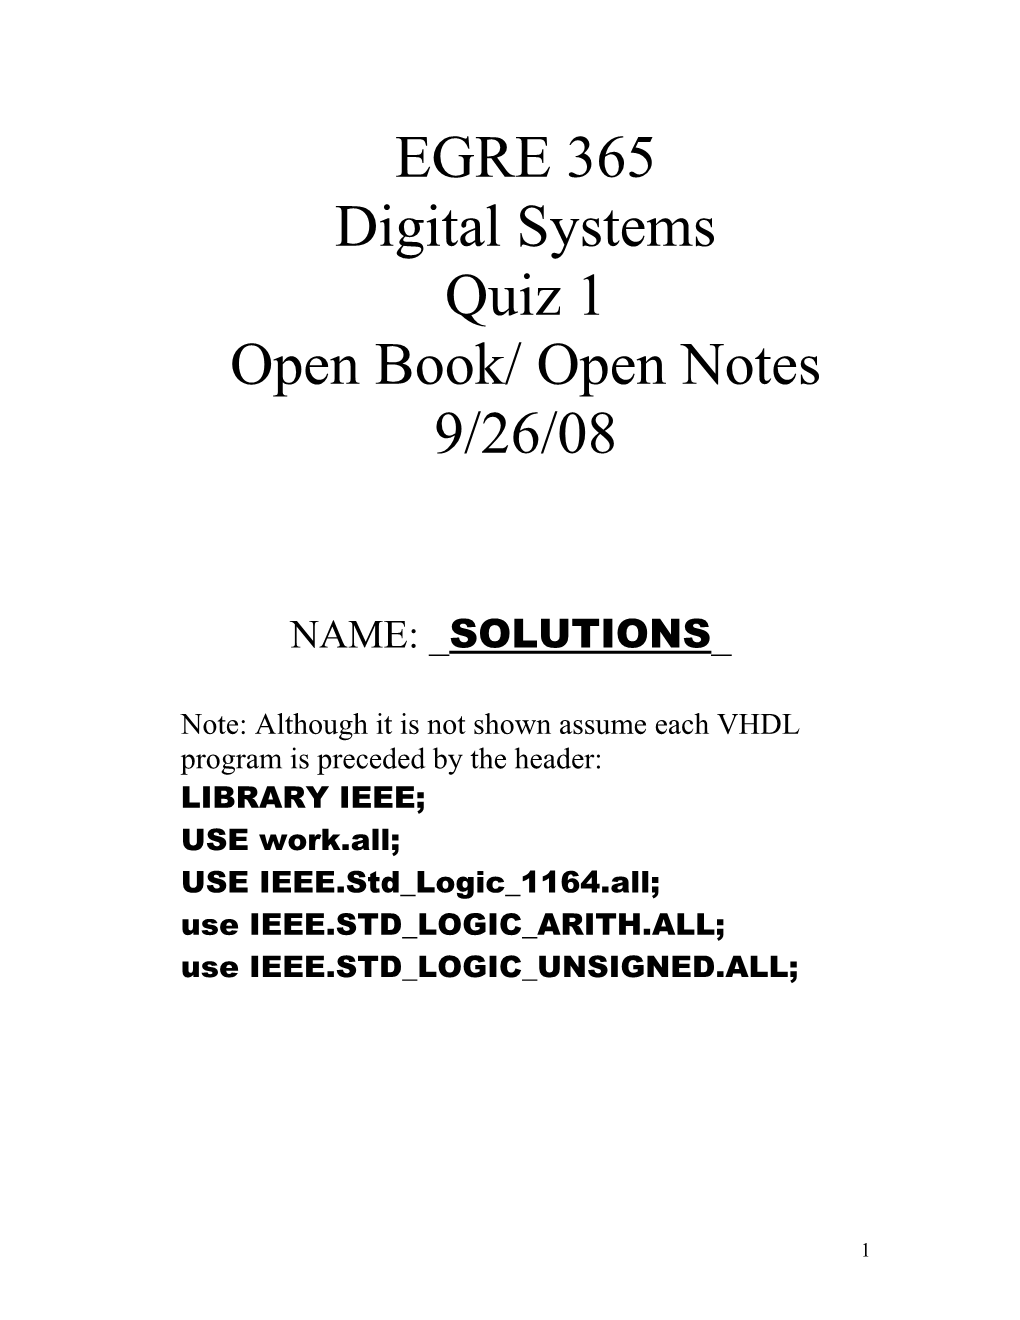 Open Book/ Open Notes s1